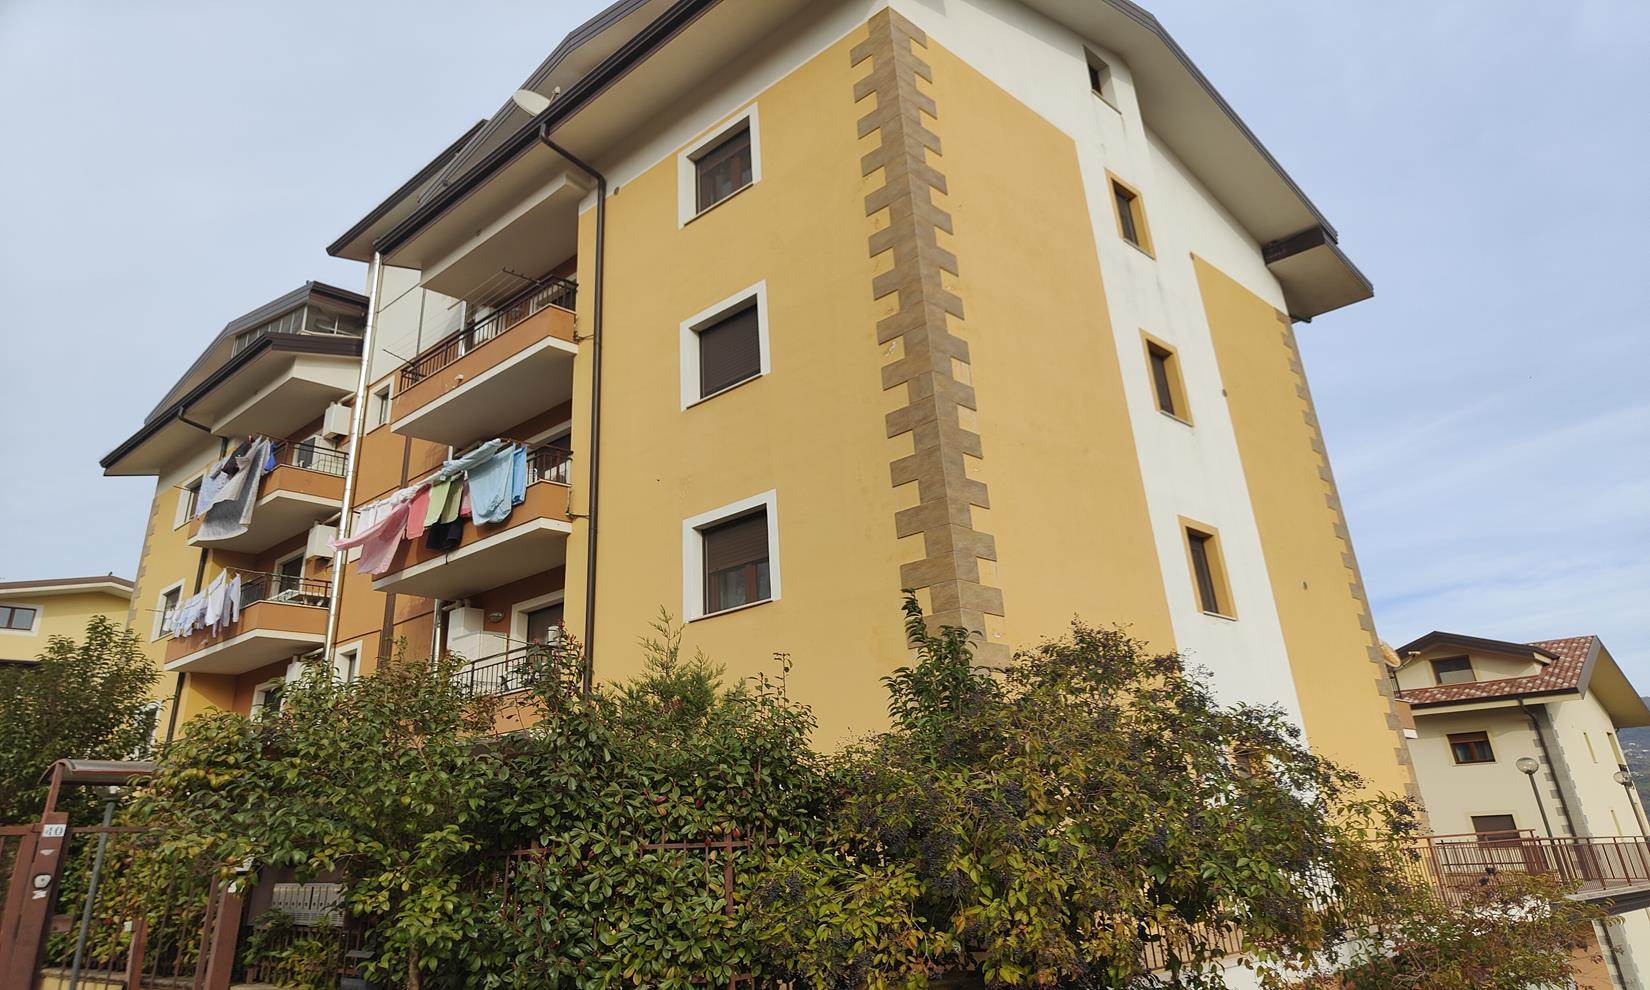 Appartamento in vendita a Montalto Uffugo, 5 locali, zona Località: SETTIMO, prezzo € 120.000 | PortaleAgenzieImmobiliari.it